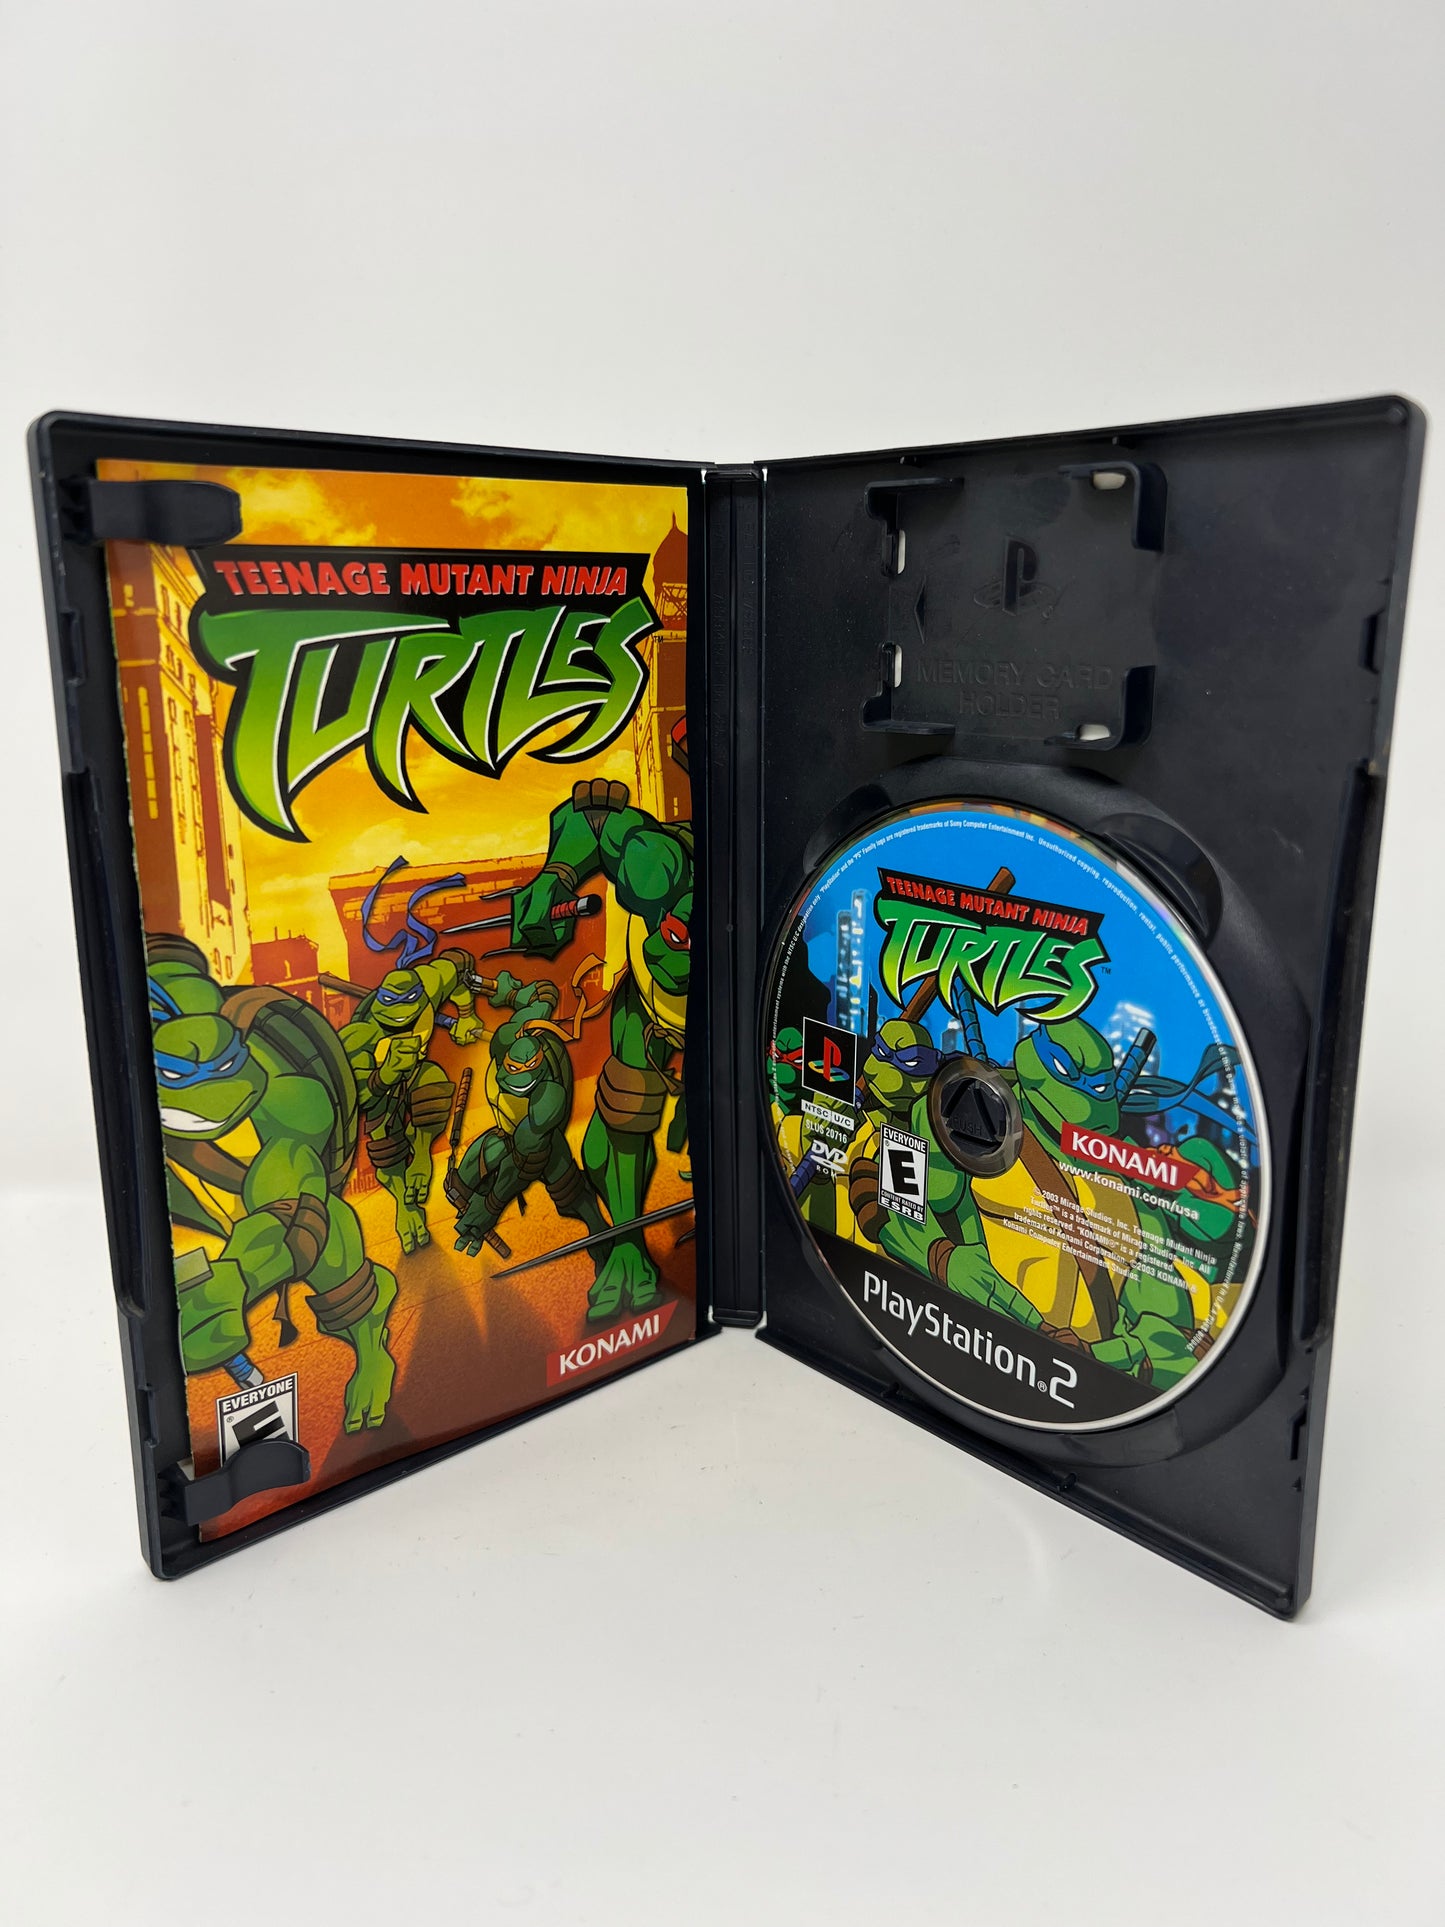 Teenage Mutant Ninja Turtles - PS2 Game - Used